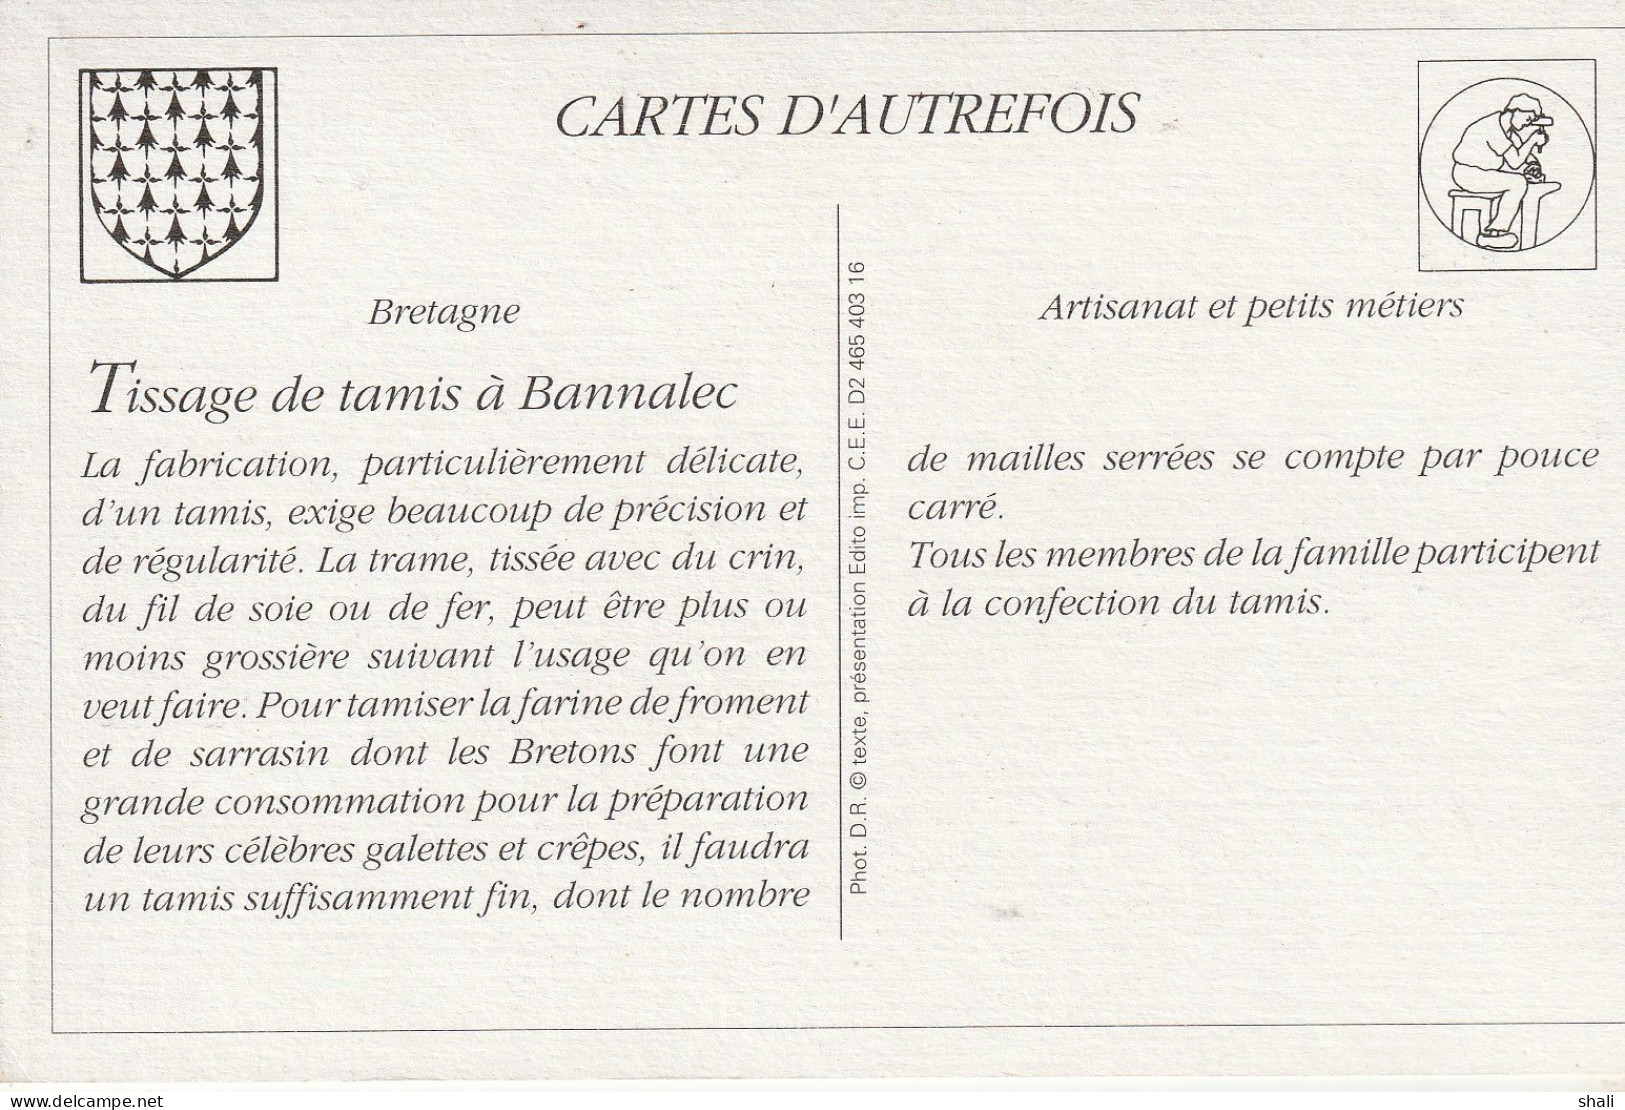 COPIE DE CARTE POSTALE ANCIENNE TISSAGE DE TAMIS ET DE CRIBLE DANS UNE FAMILLE DE BANNALEC - Bannalec